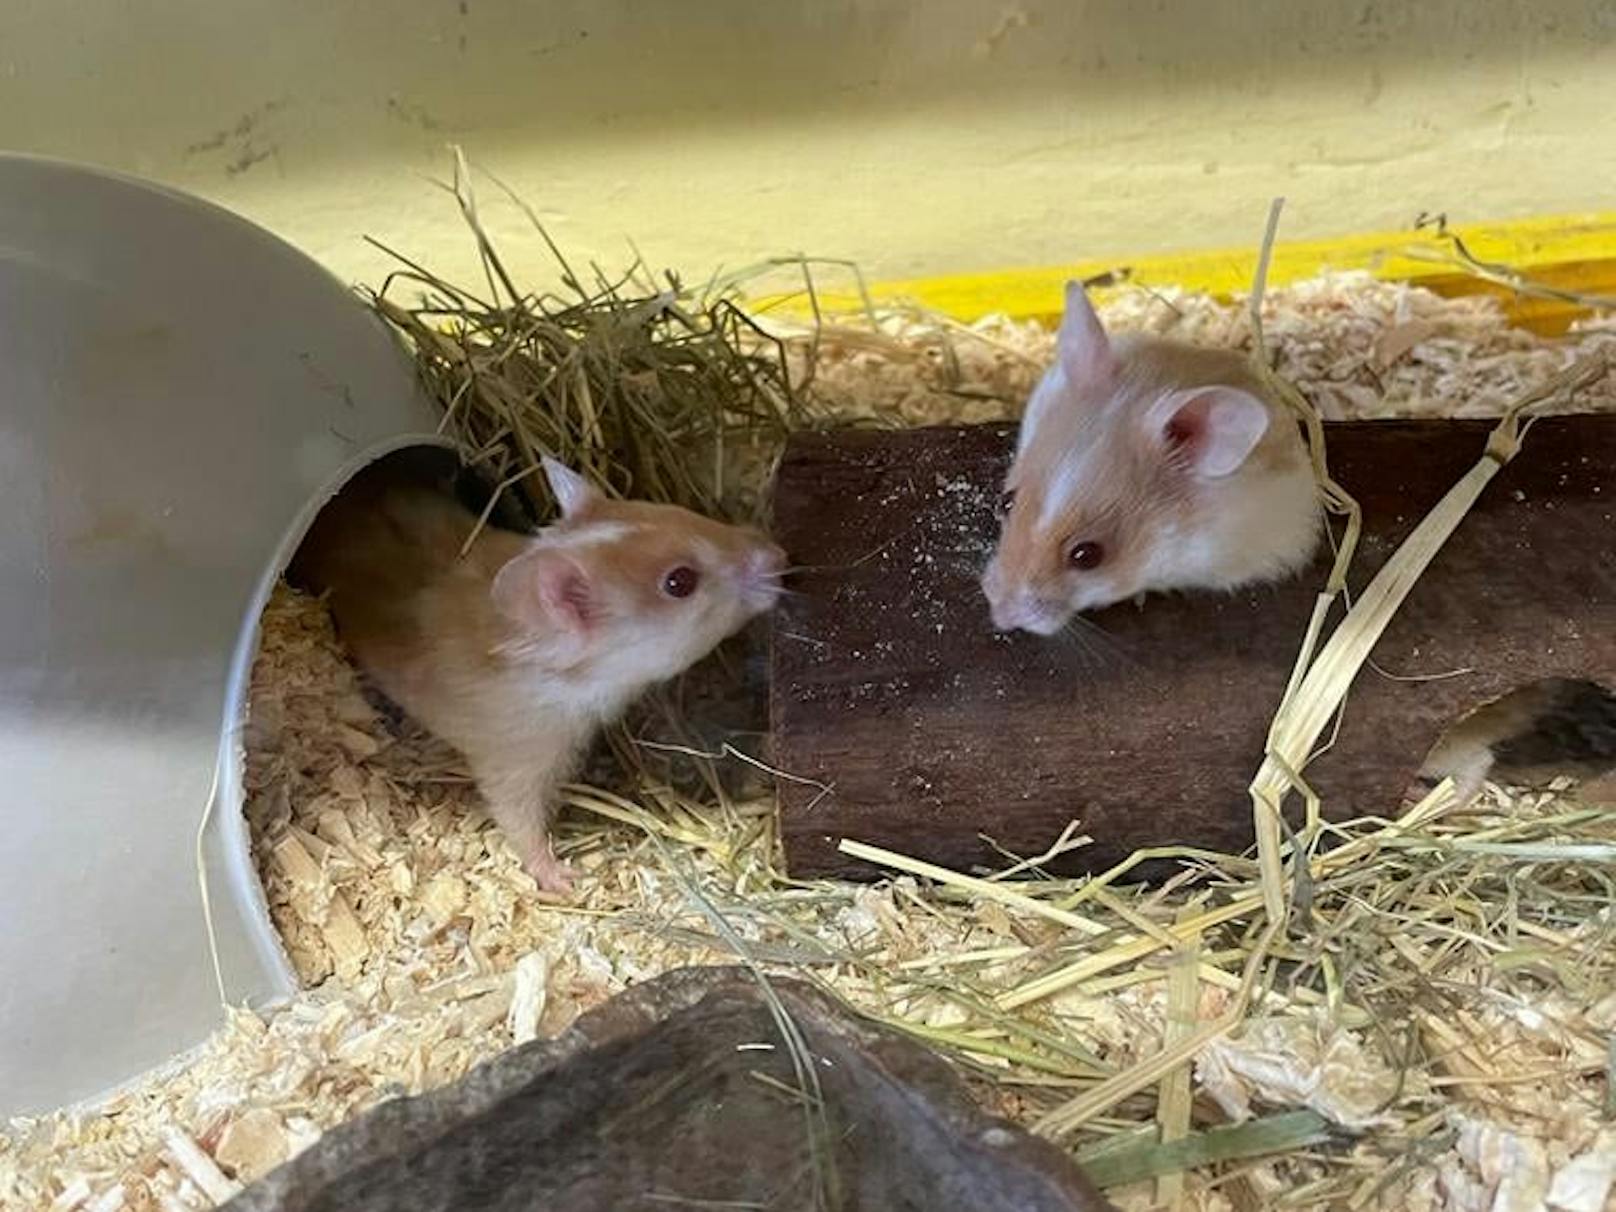 Die zwei Hamster konnten gerettet werden.